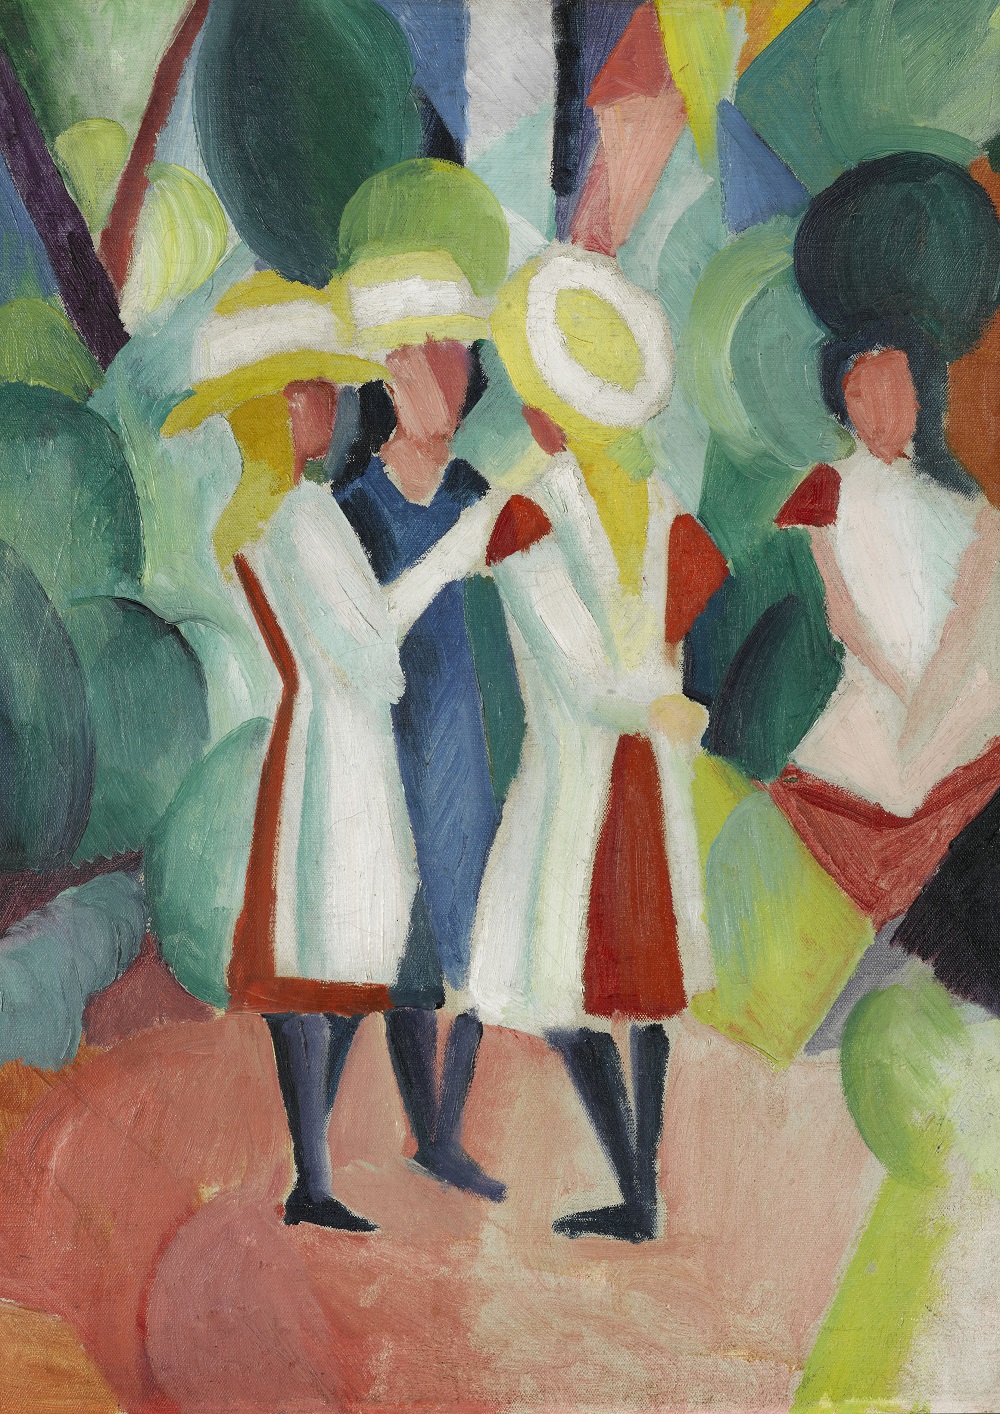 August Macke
Trois jeunes filles avec des chapeaux de paille jaunes, 1913
Huile sur toile, 104 × 87,5 cm
La Haye, collection Gemeentemuseum
© Collection Gemeentemuseum Den Haag